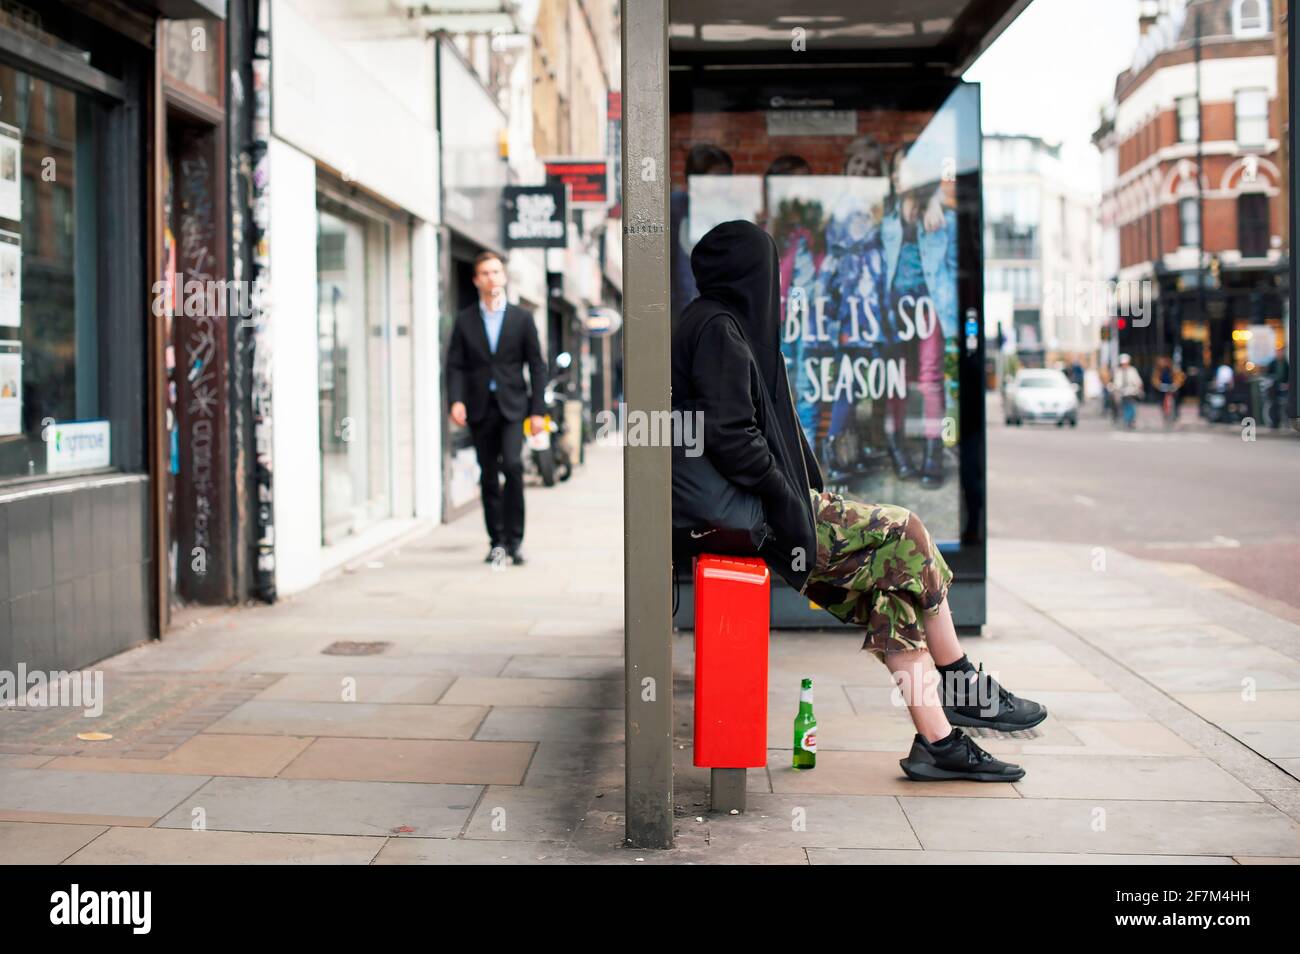 Jeune homme à hoodie assis à l'arrêt de bus, attendant le bus. Vie quotidienne en ville. Bethnal Green Road, East London, Royaume-Uni. Juillet 2015 Banque D'Images